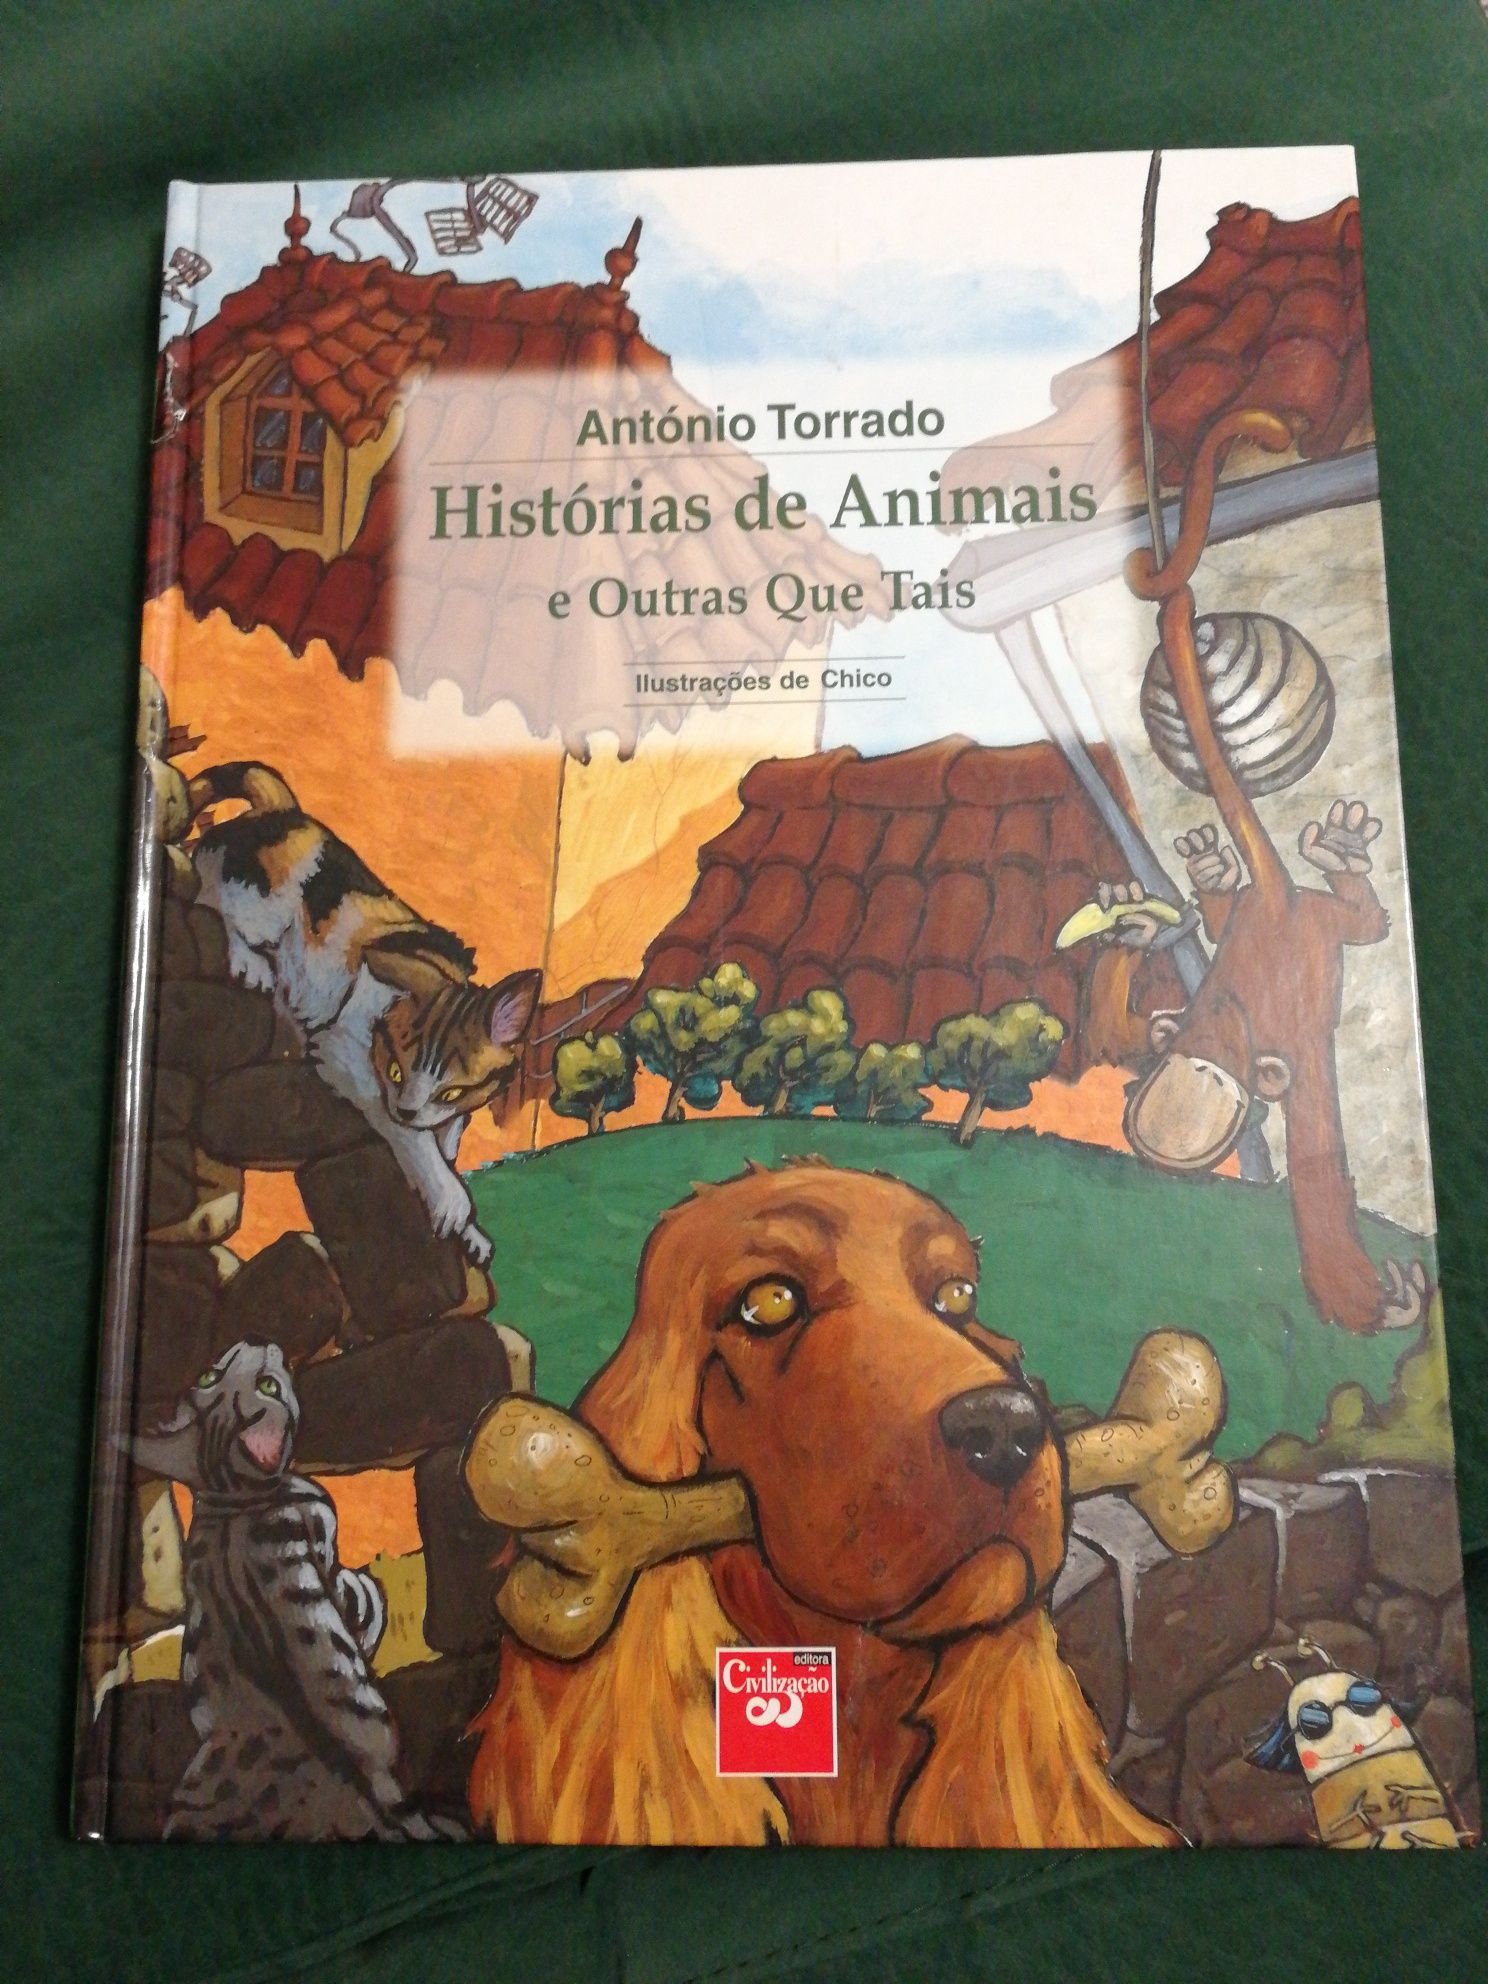 Livro "Histórias de Animais e Outras Que Tais" de António Torrado